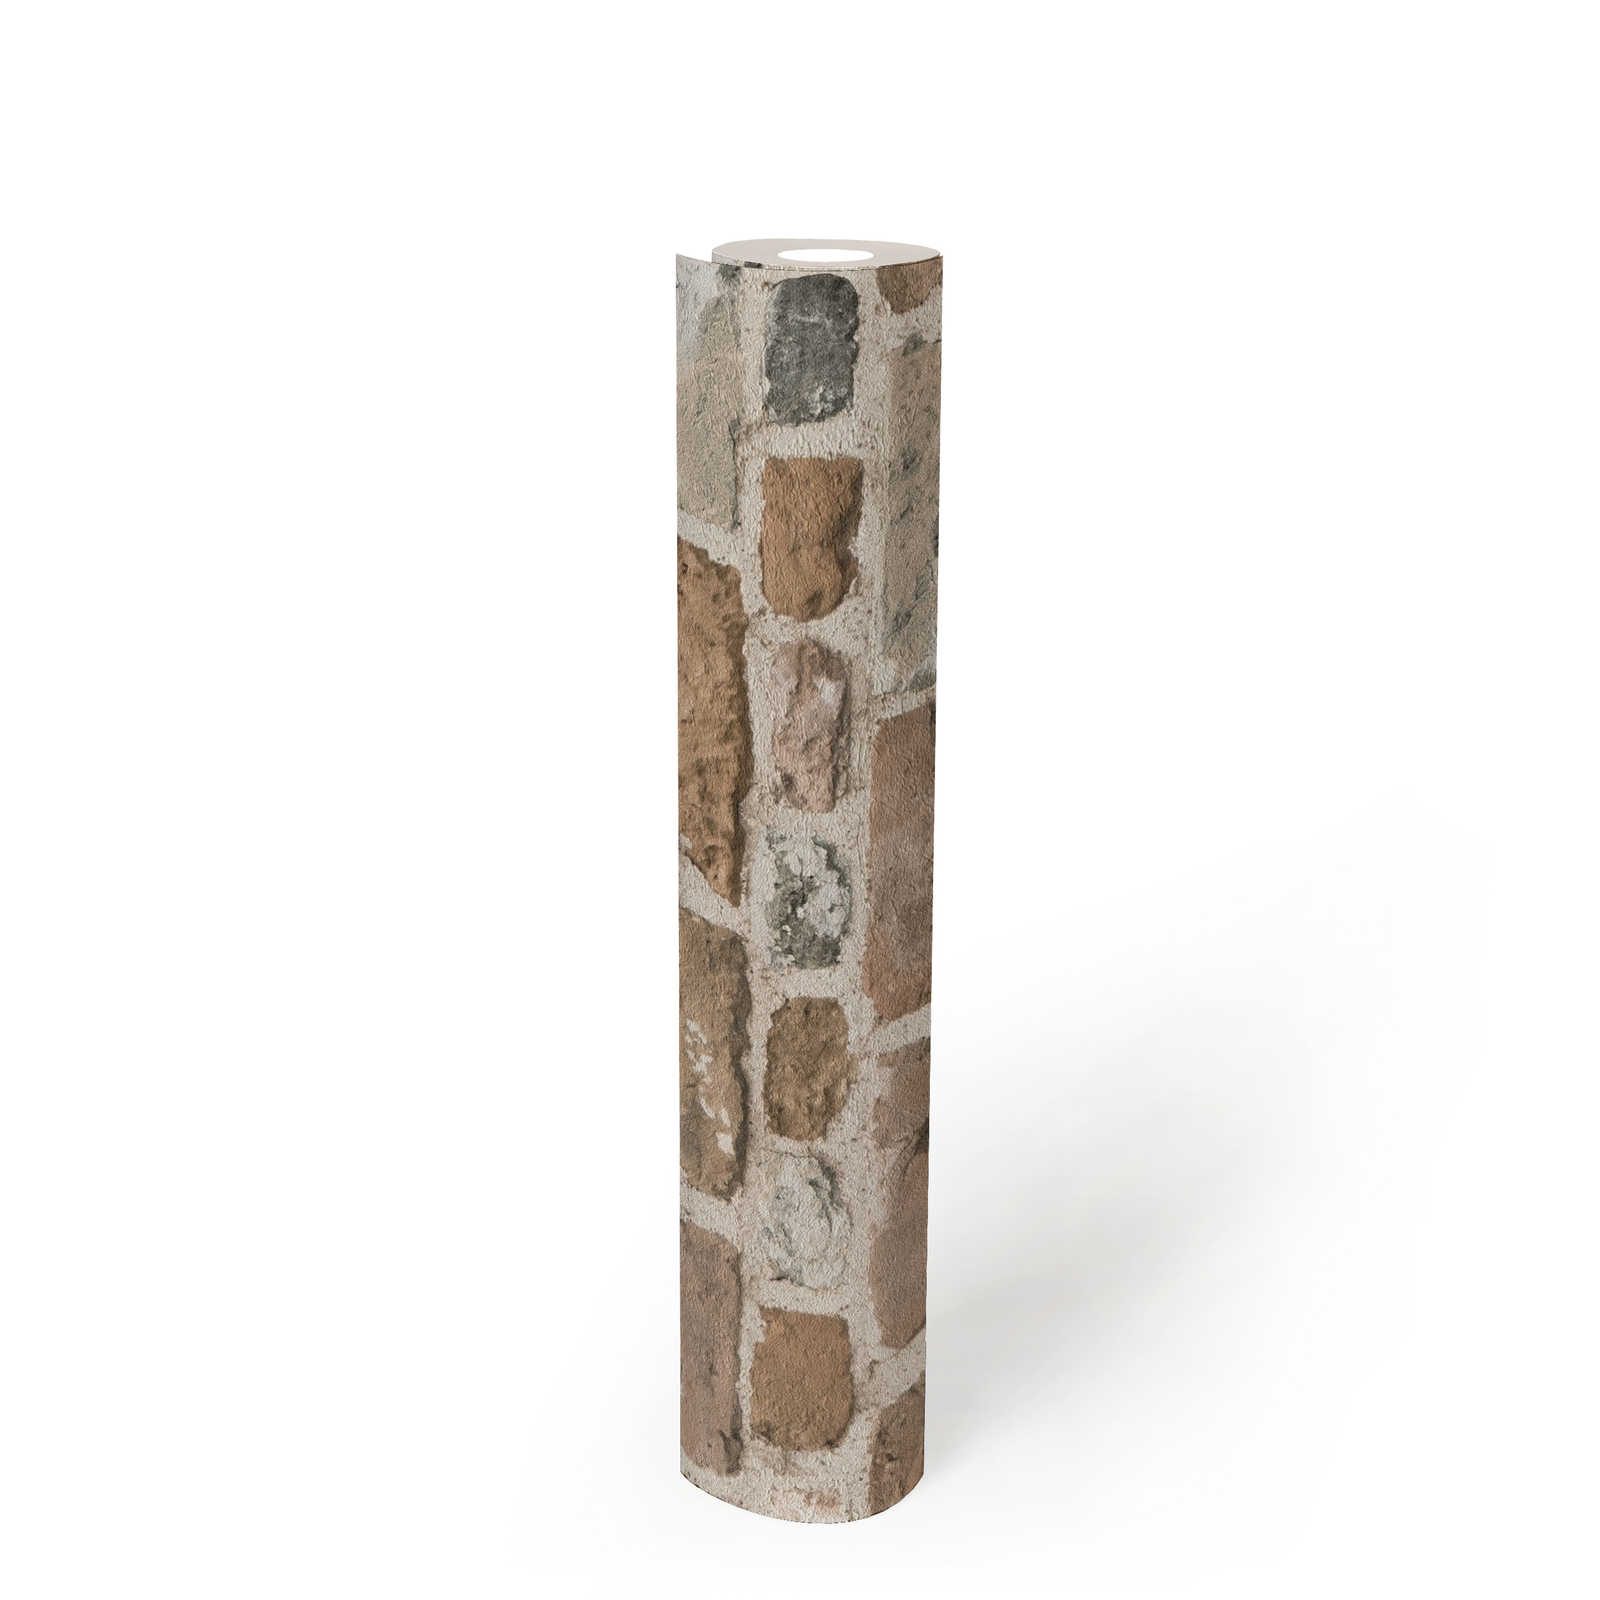             Braune Steintapete mit Ziegelmaueroptik – Braun, Grau
        